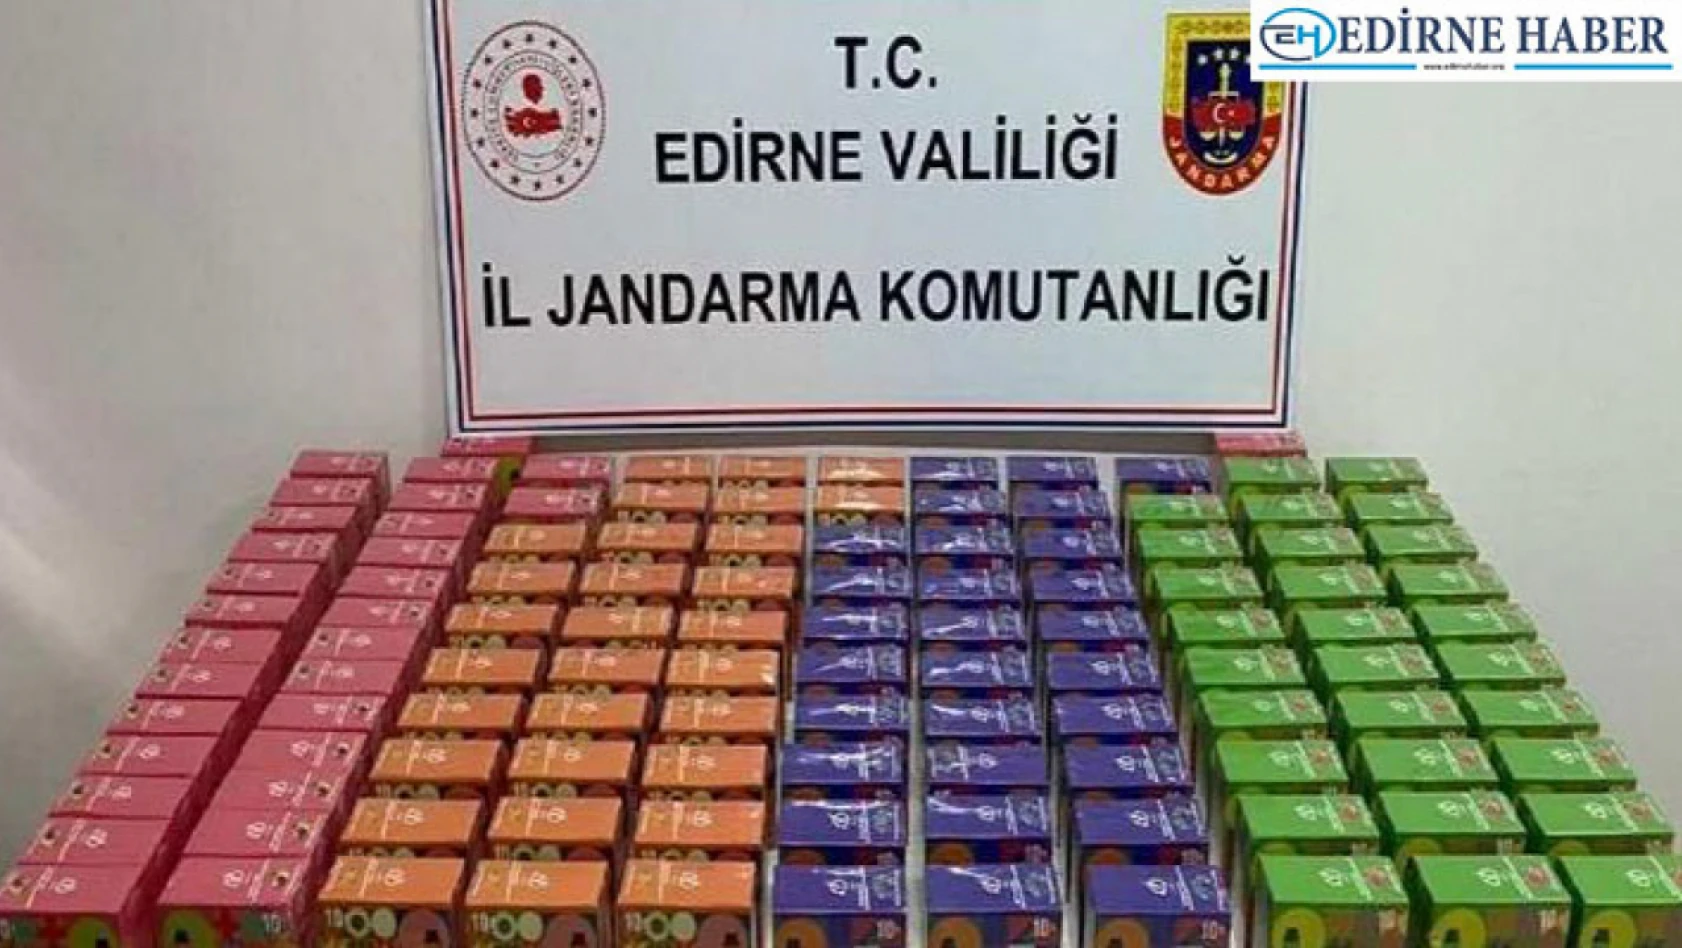 Edirne'de 1179 adet elektronik sigara ele geçirildi